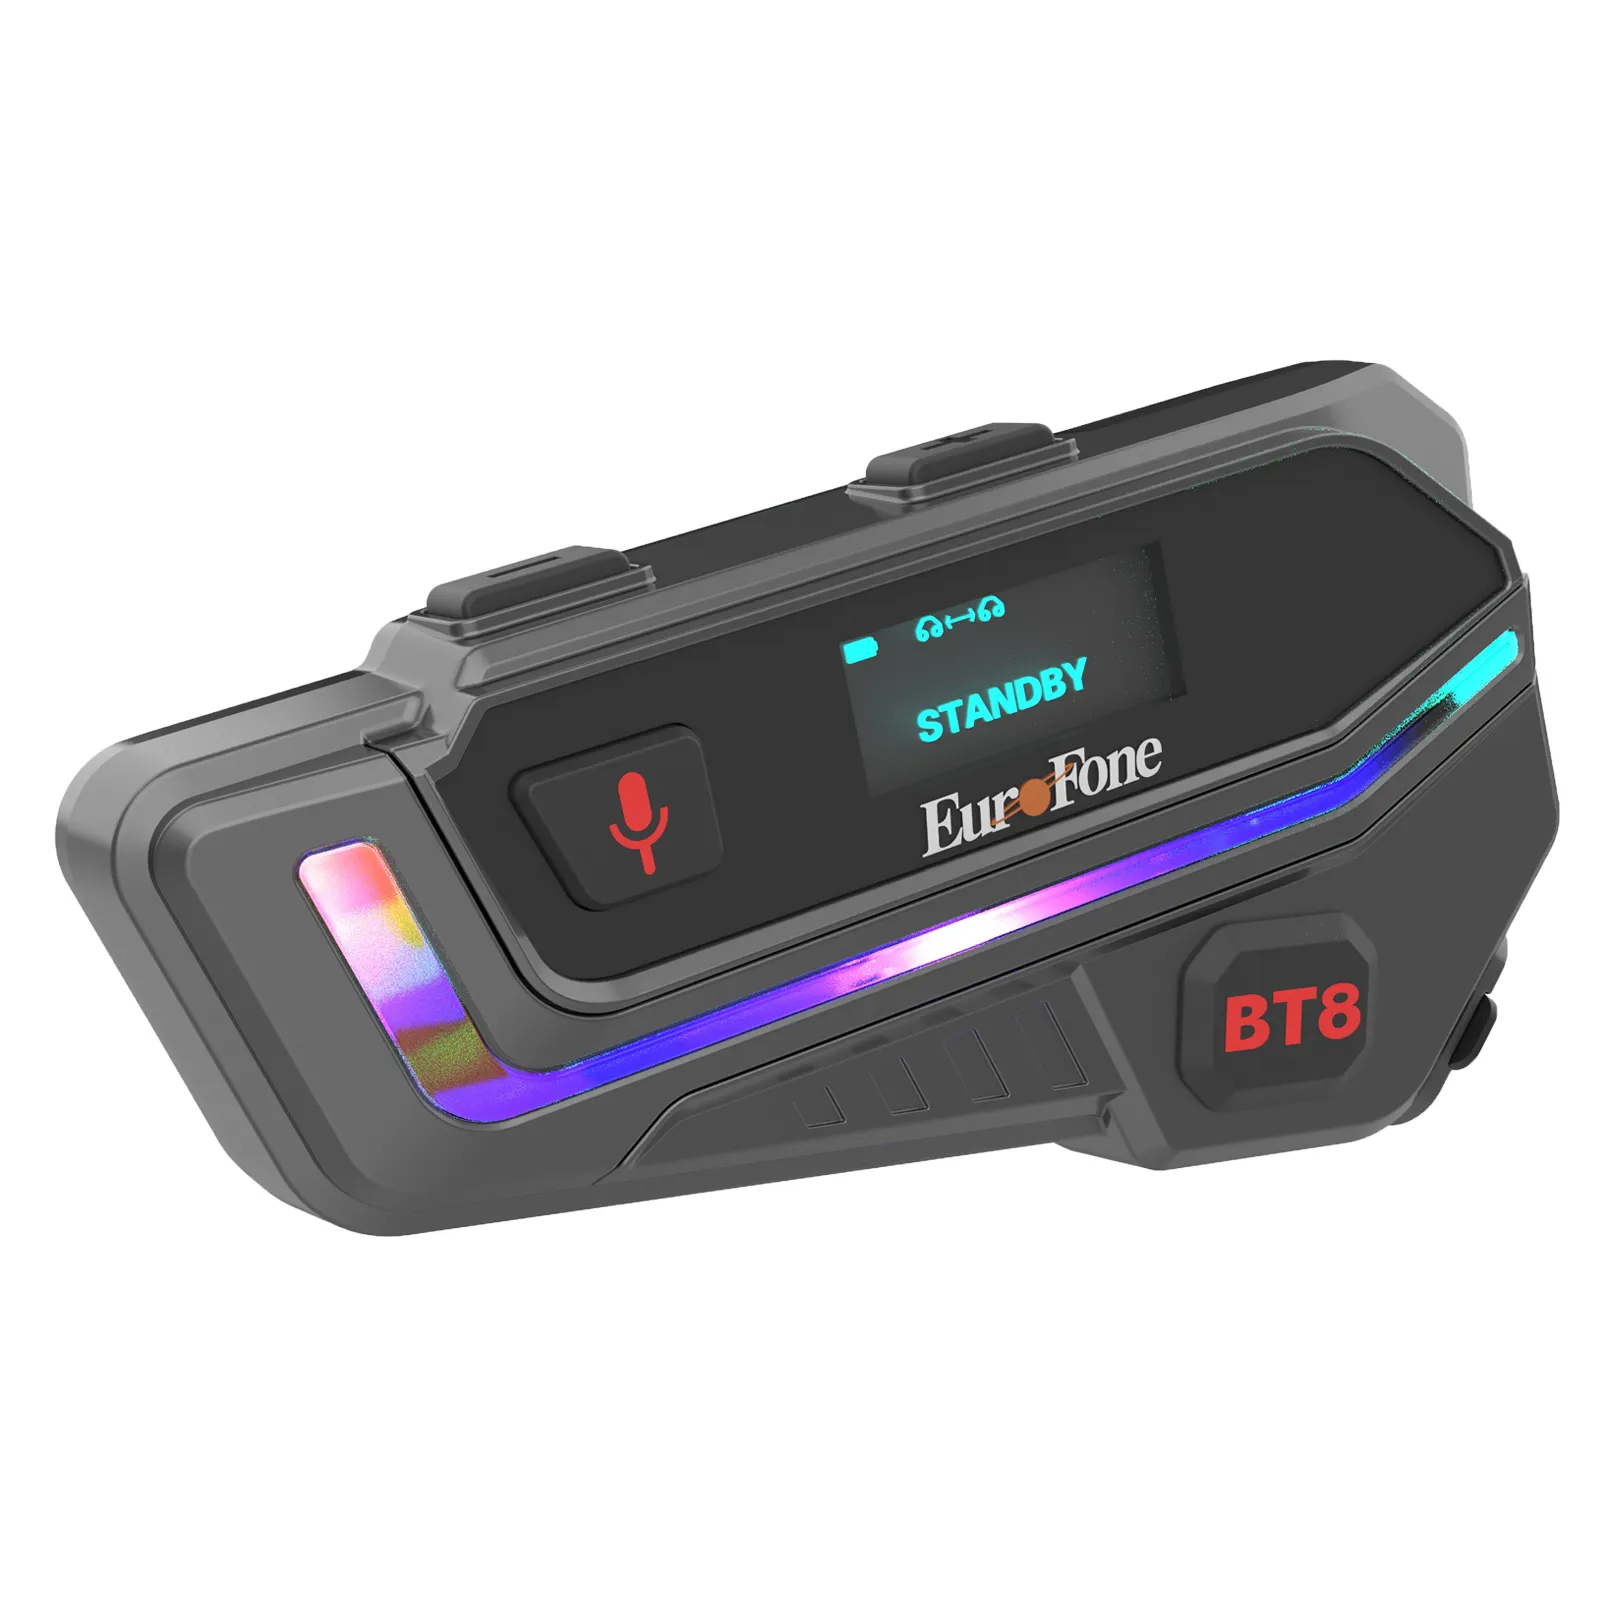 Простая установка шлем Bluetooth-гарнитура с разделением музыки, FM-радио, дисплей заряда батареи и напоминание для использования на мотоцикле